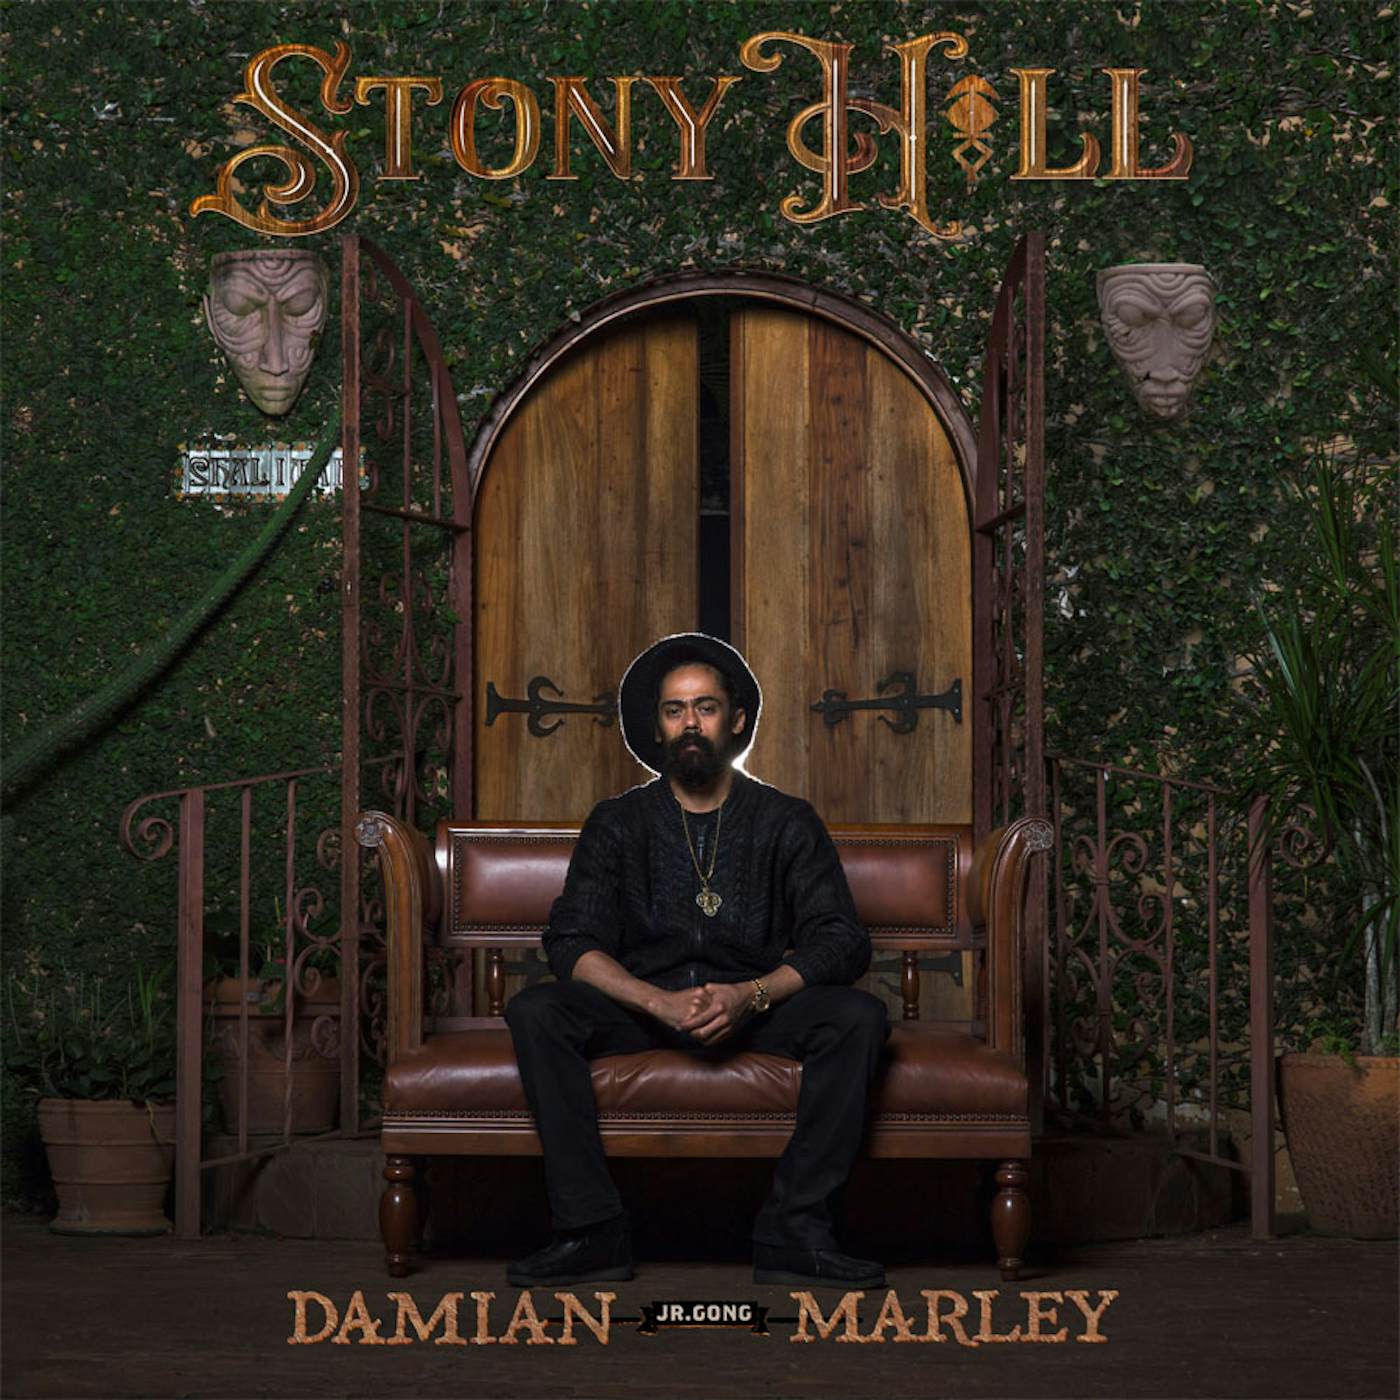 Damian Marley Stony Hill Vinyl Record